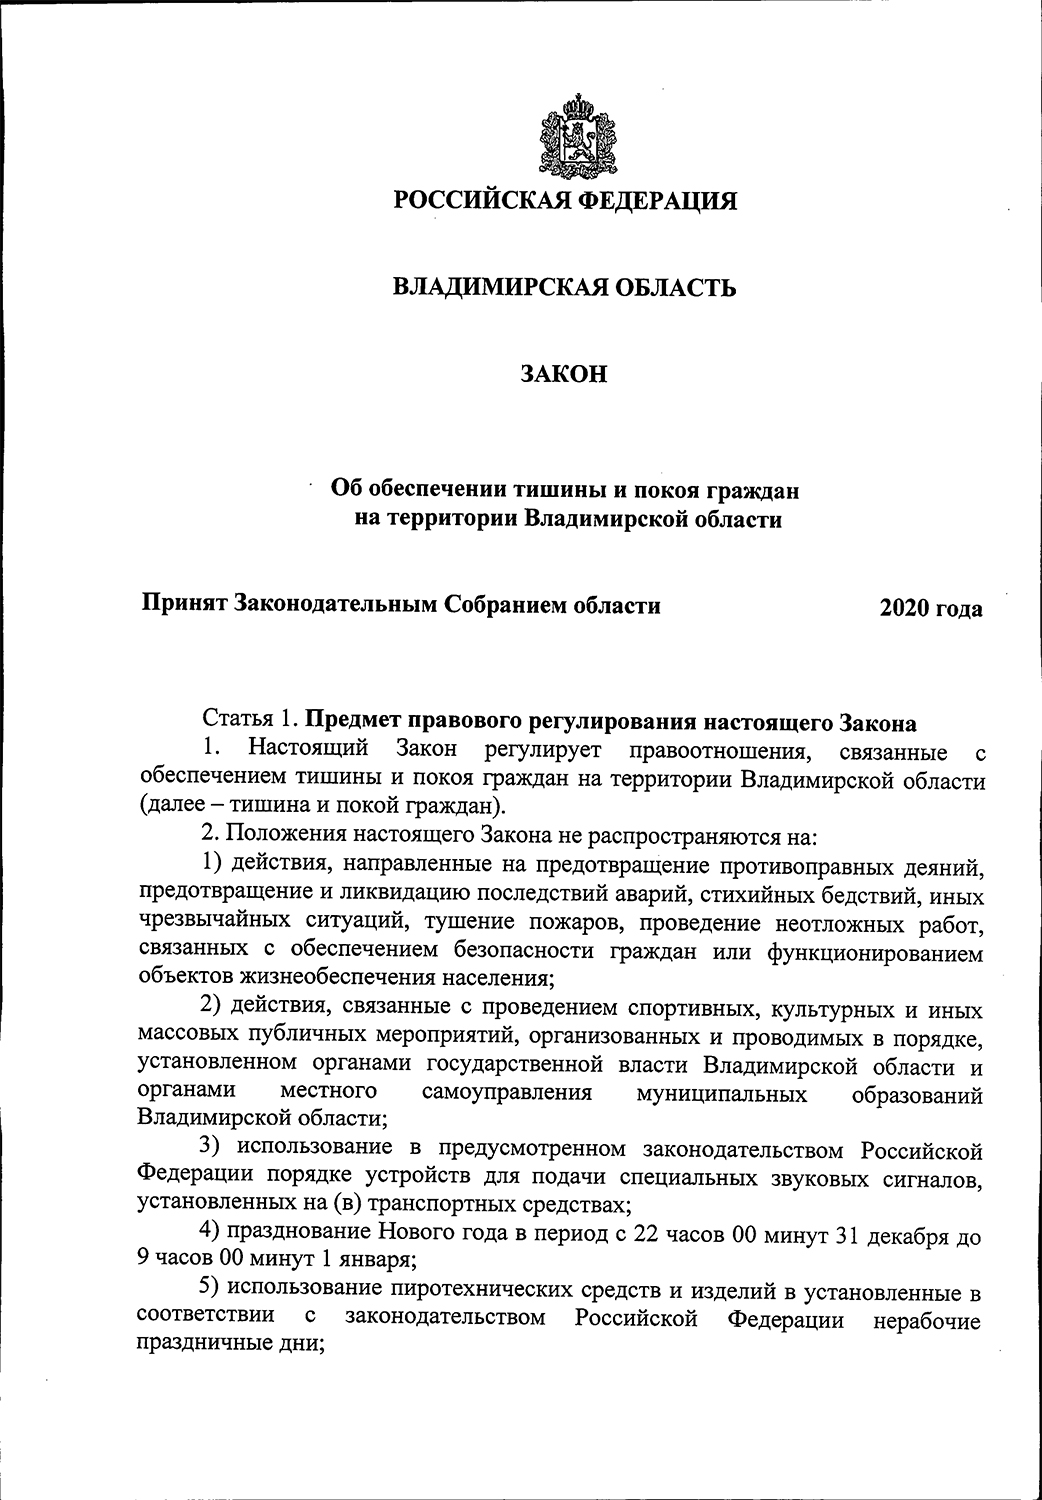 Закон о тишине в Волгоградской области: основные положения и последствия